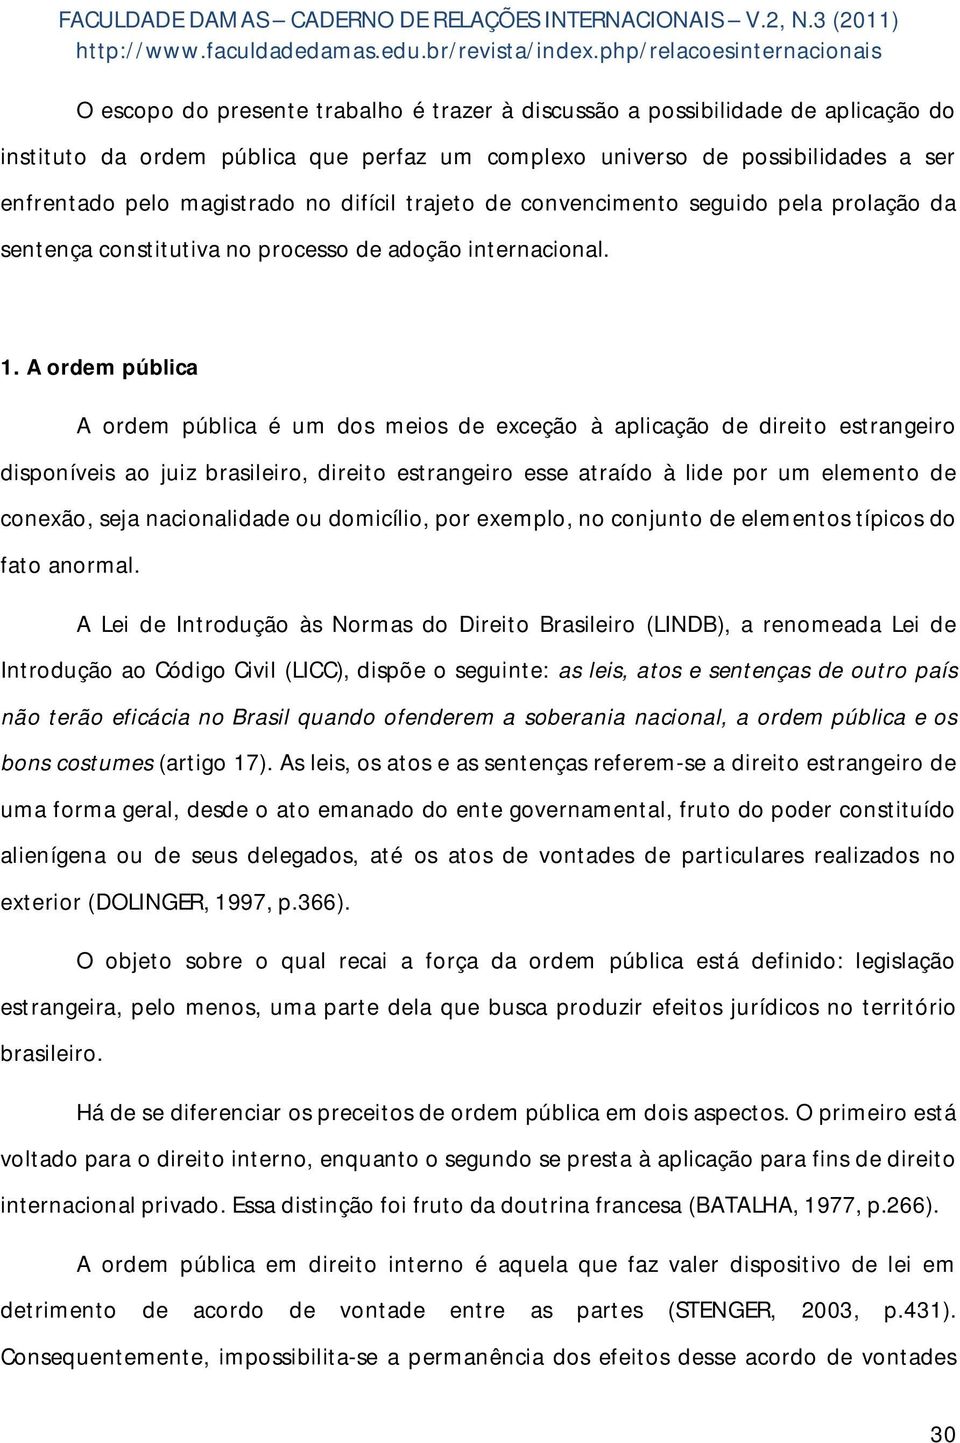 A ordem pública A ordem pública é um dos meios de exceção à aplicação de direito estrangeiro disponíveis ao juiz brasileiro, direito estrangeiro esse atraído à lide por um elemento de conexão, seja